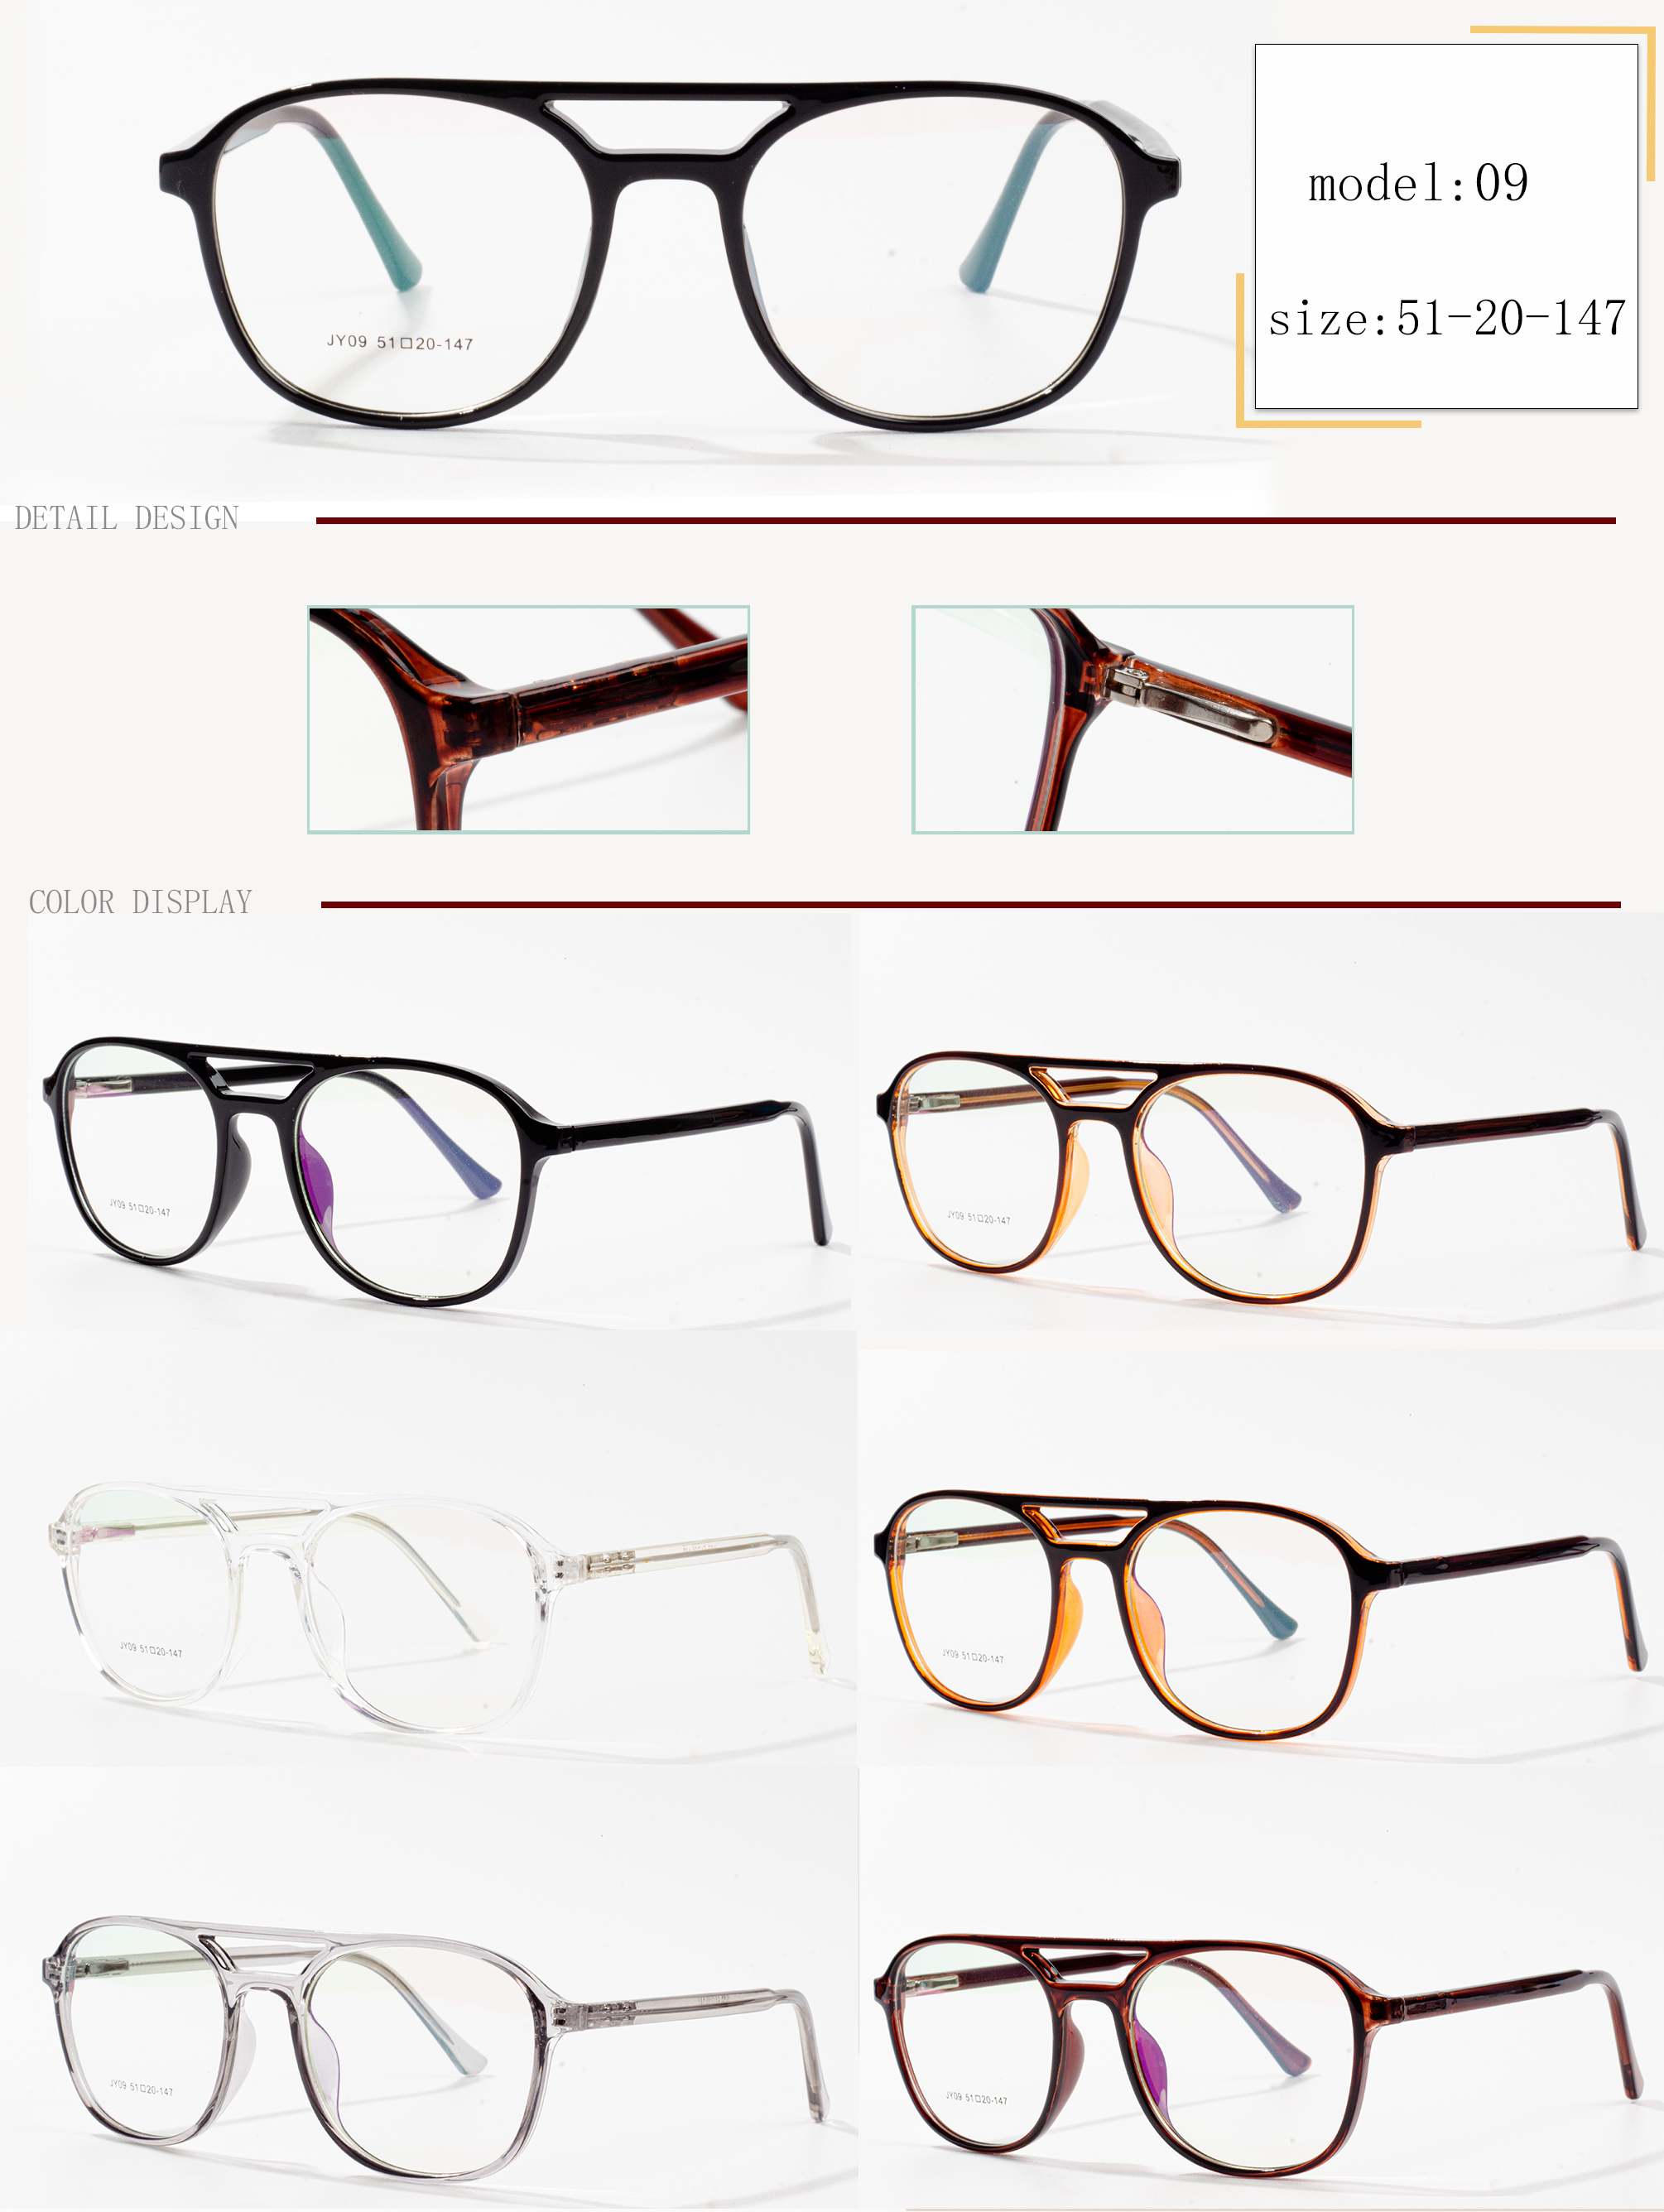 marcos de anteojos de varios colores